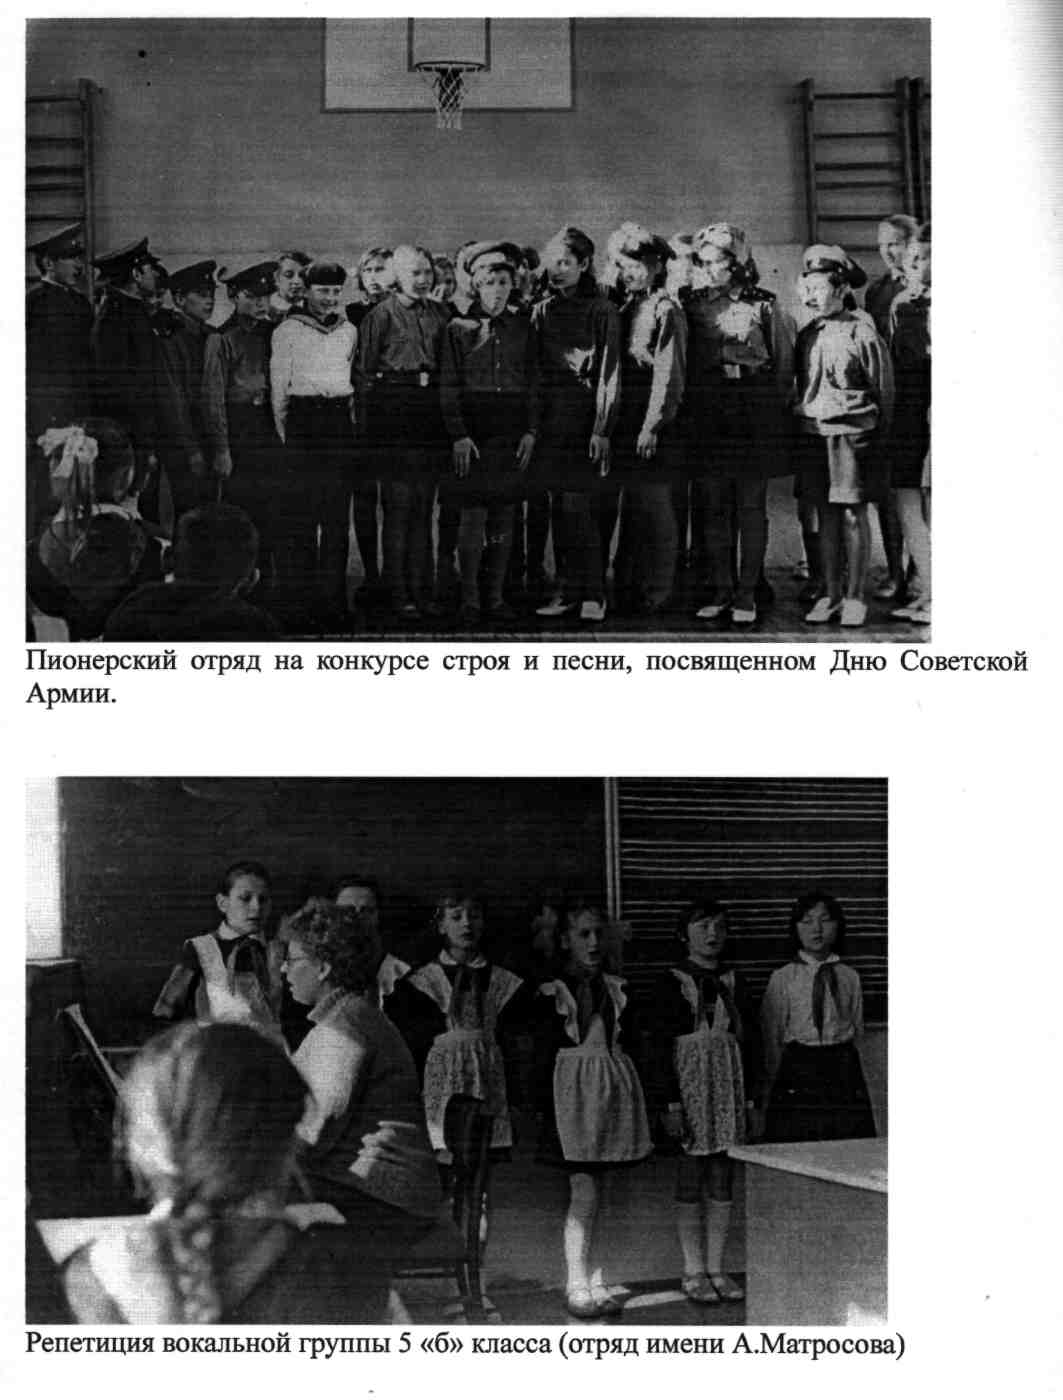 Развитие детского движения в Успенском районе Павлодарской области в 60-70 гг. ХХ века